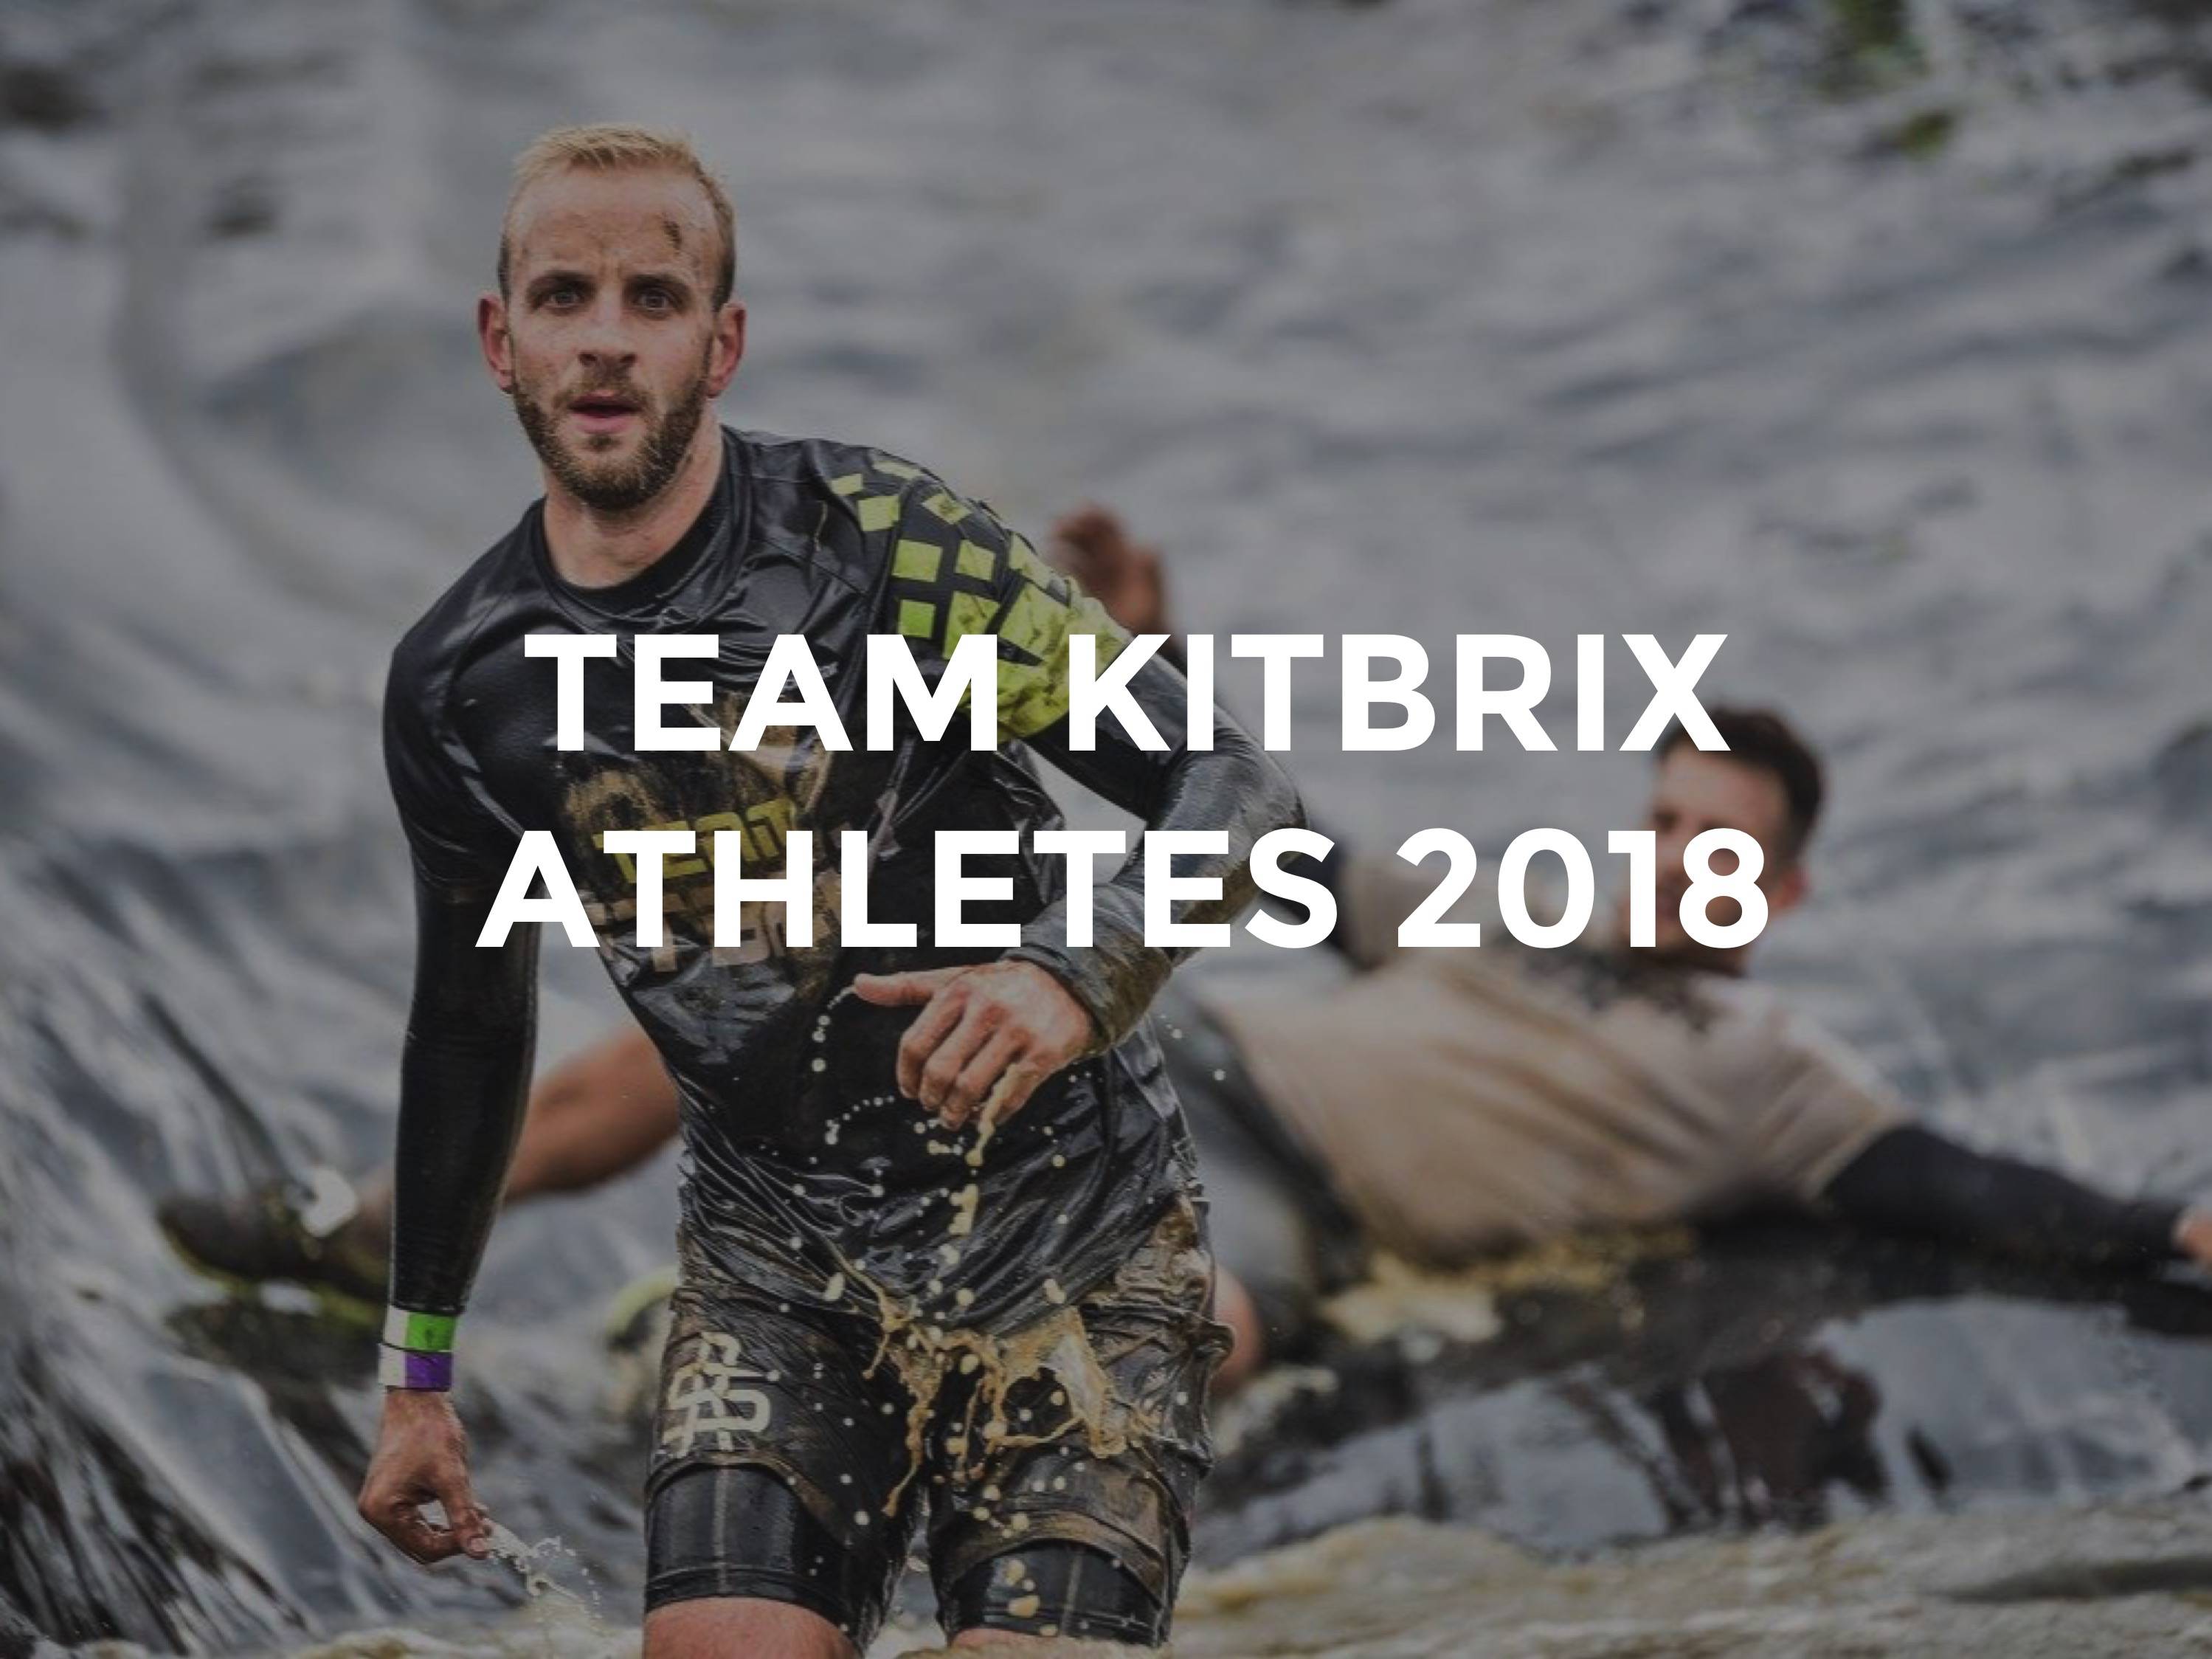 Team KitBrix OCR